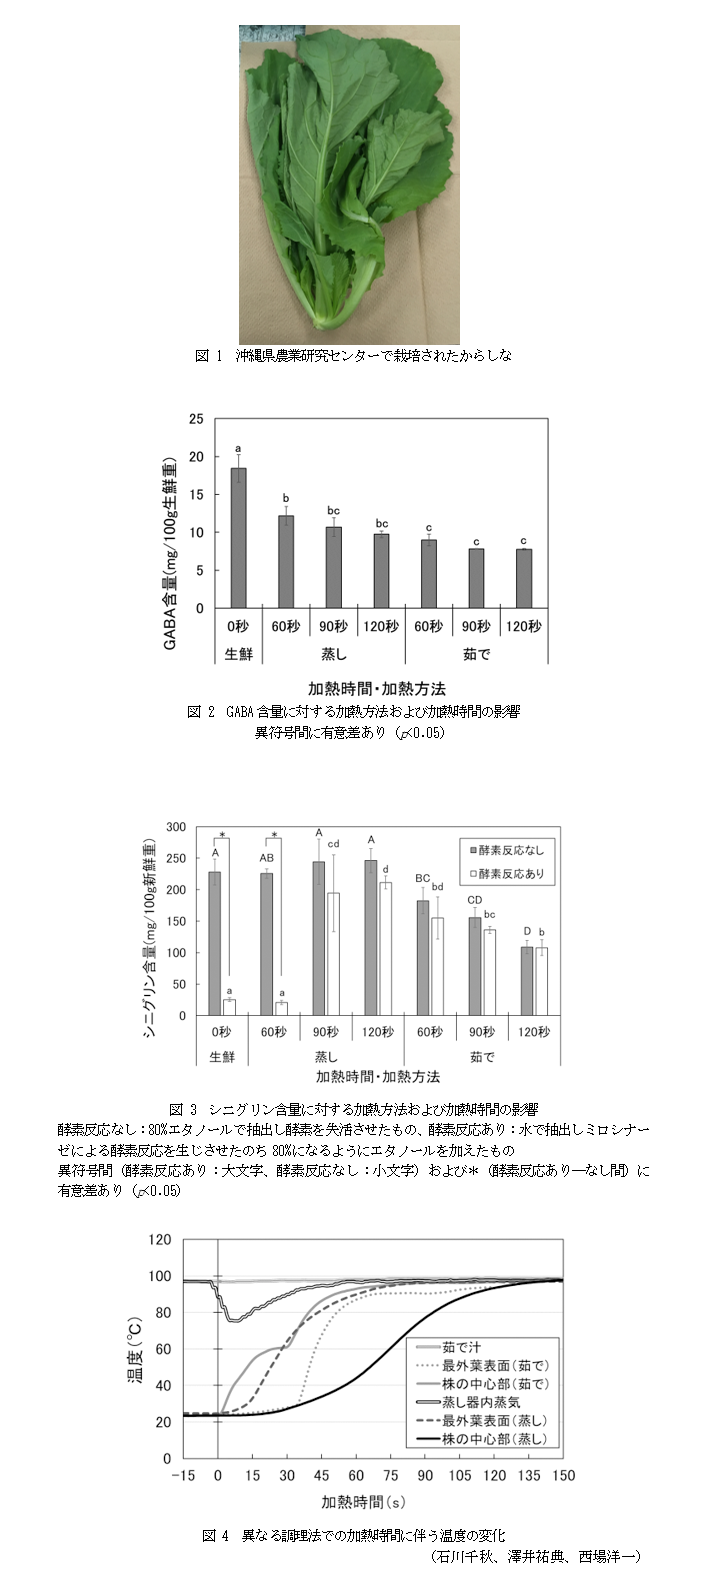 図 1 沖縄県農業研究センターで栽培されたからしな,図 2 GABA含量に対する加熱方法および加熱時間の影響,図 3 シニグリン含量に対する加熱方法および加熱時間の影響,図 4 異なる調理法での加熱時間に伴う温度の変化